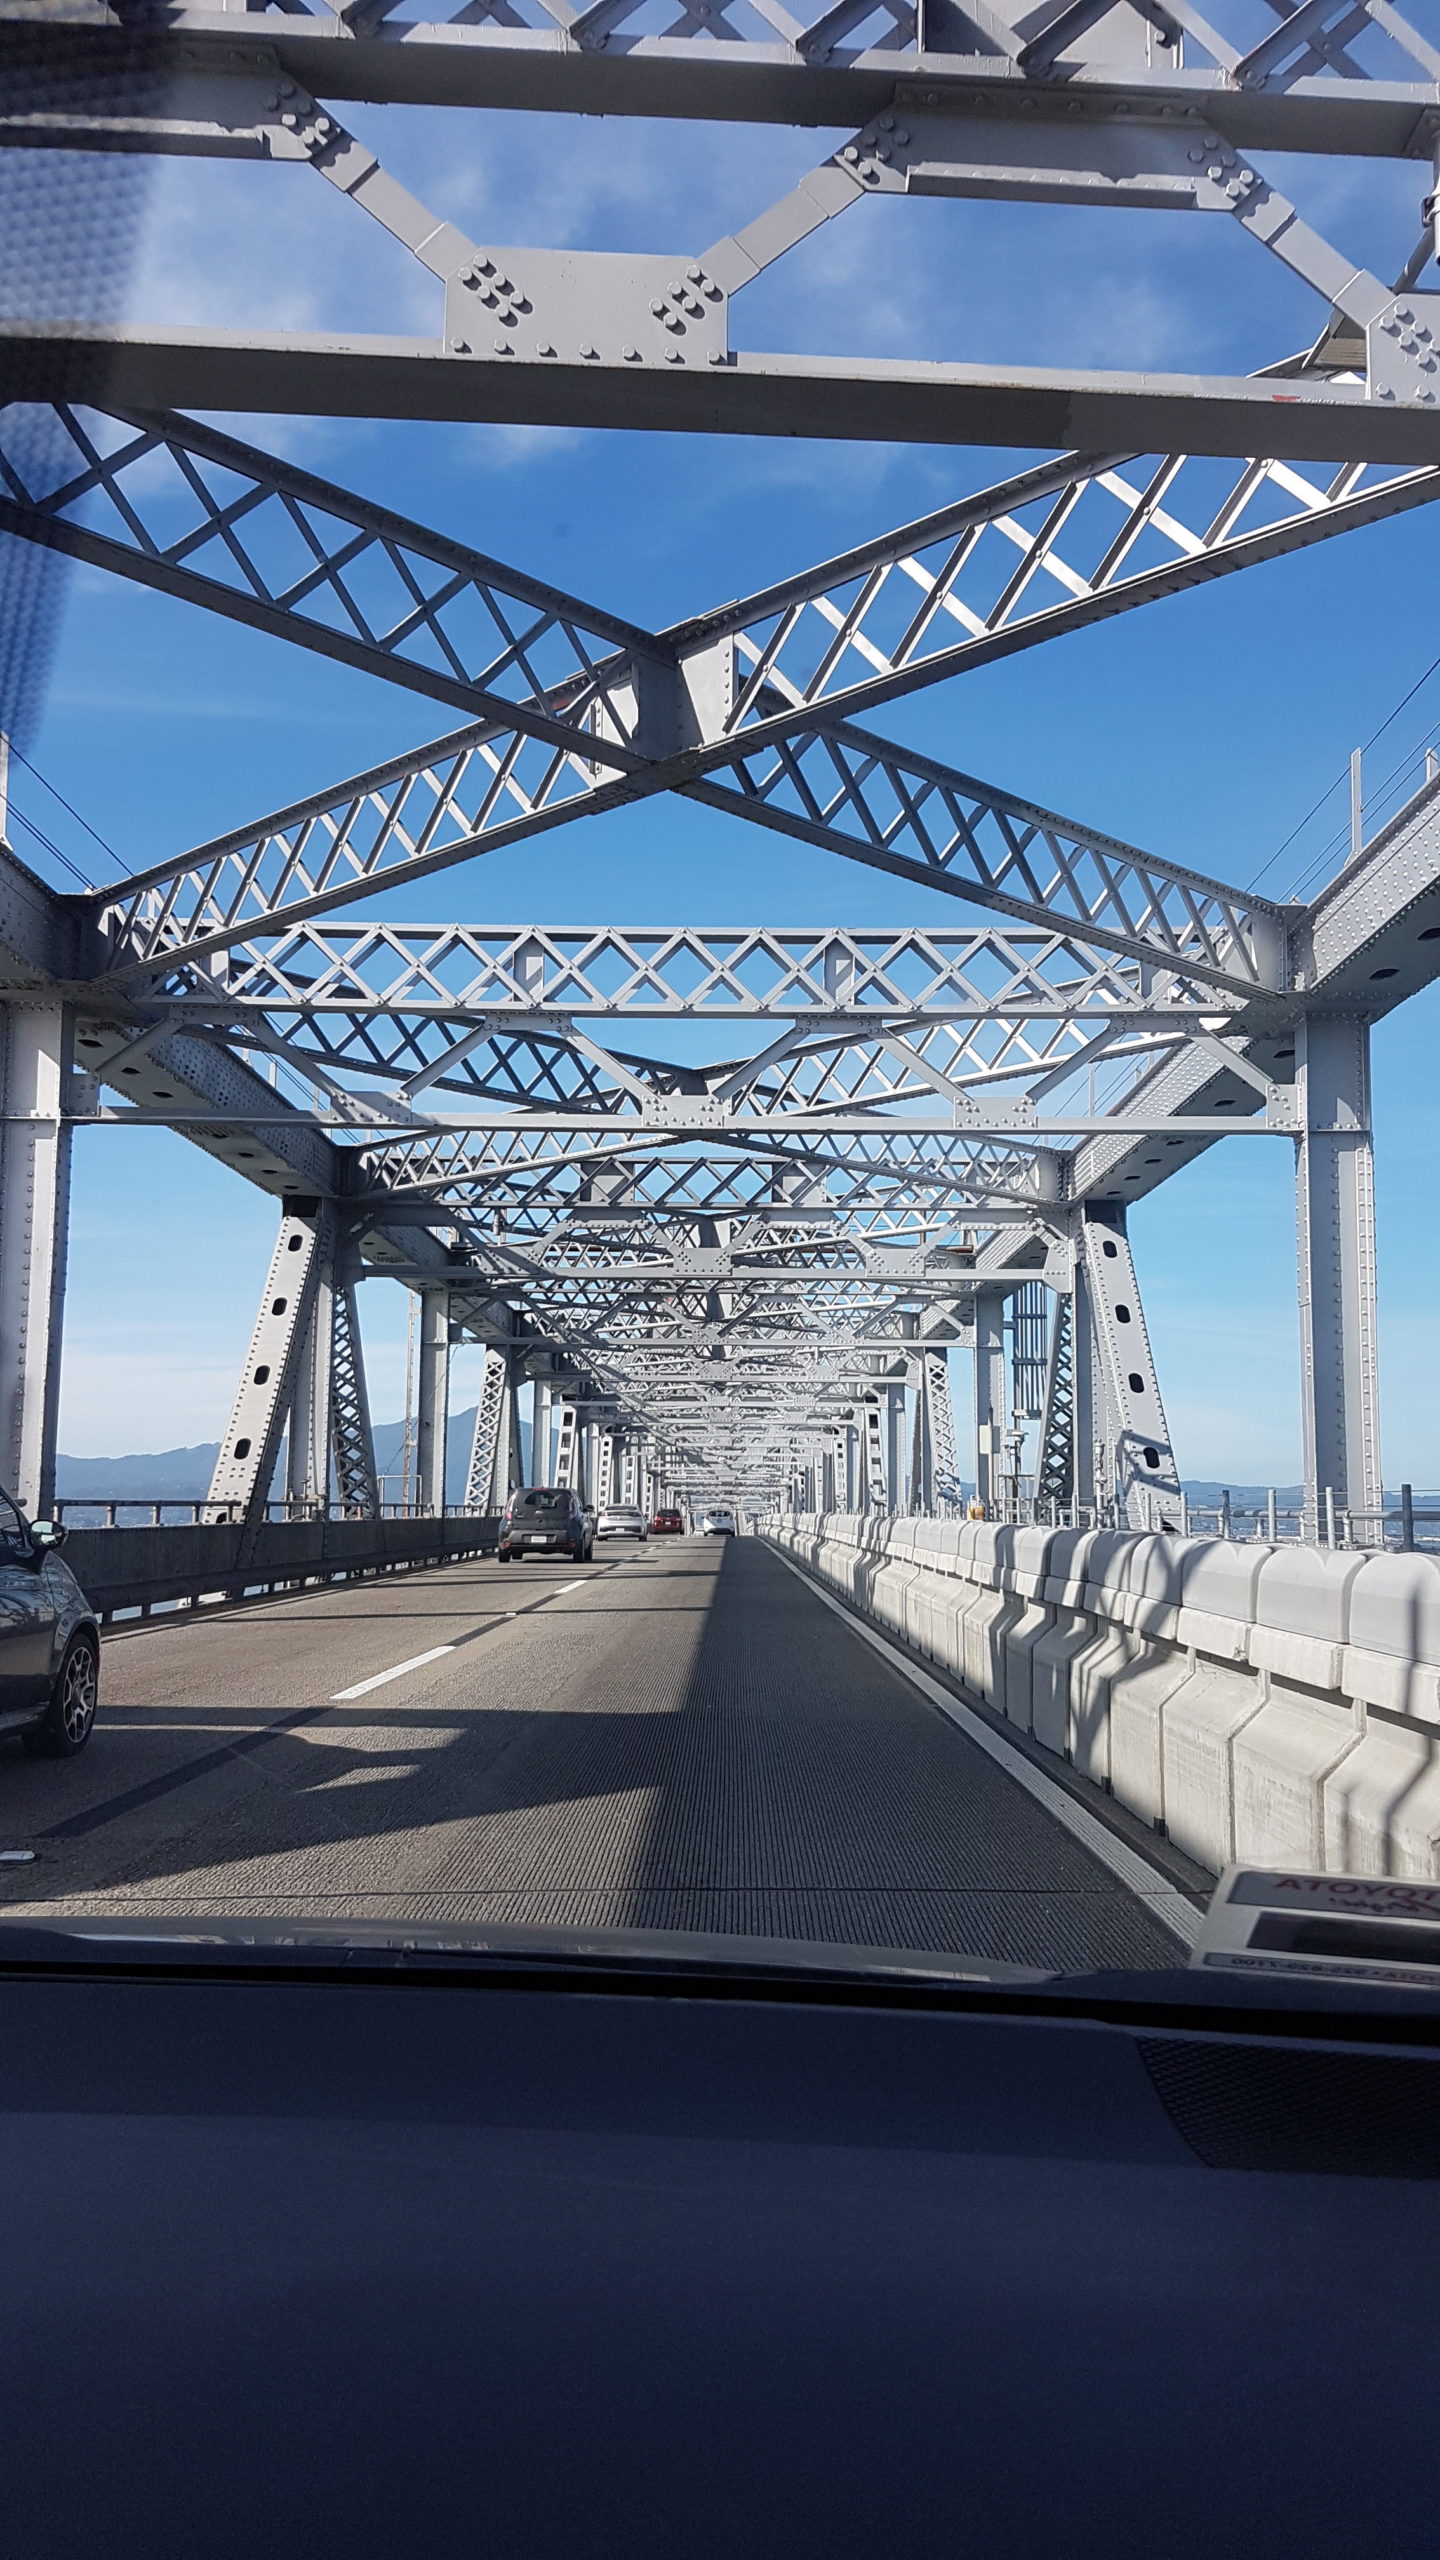 Richmond-San Rafael bridge